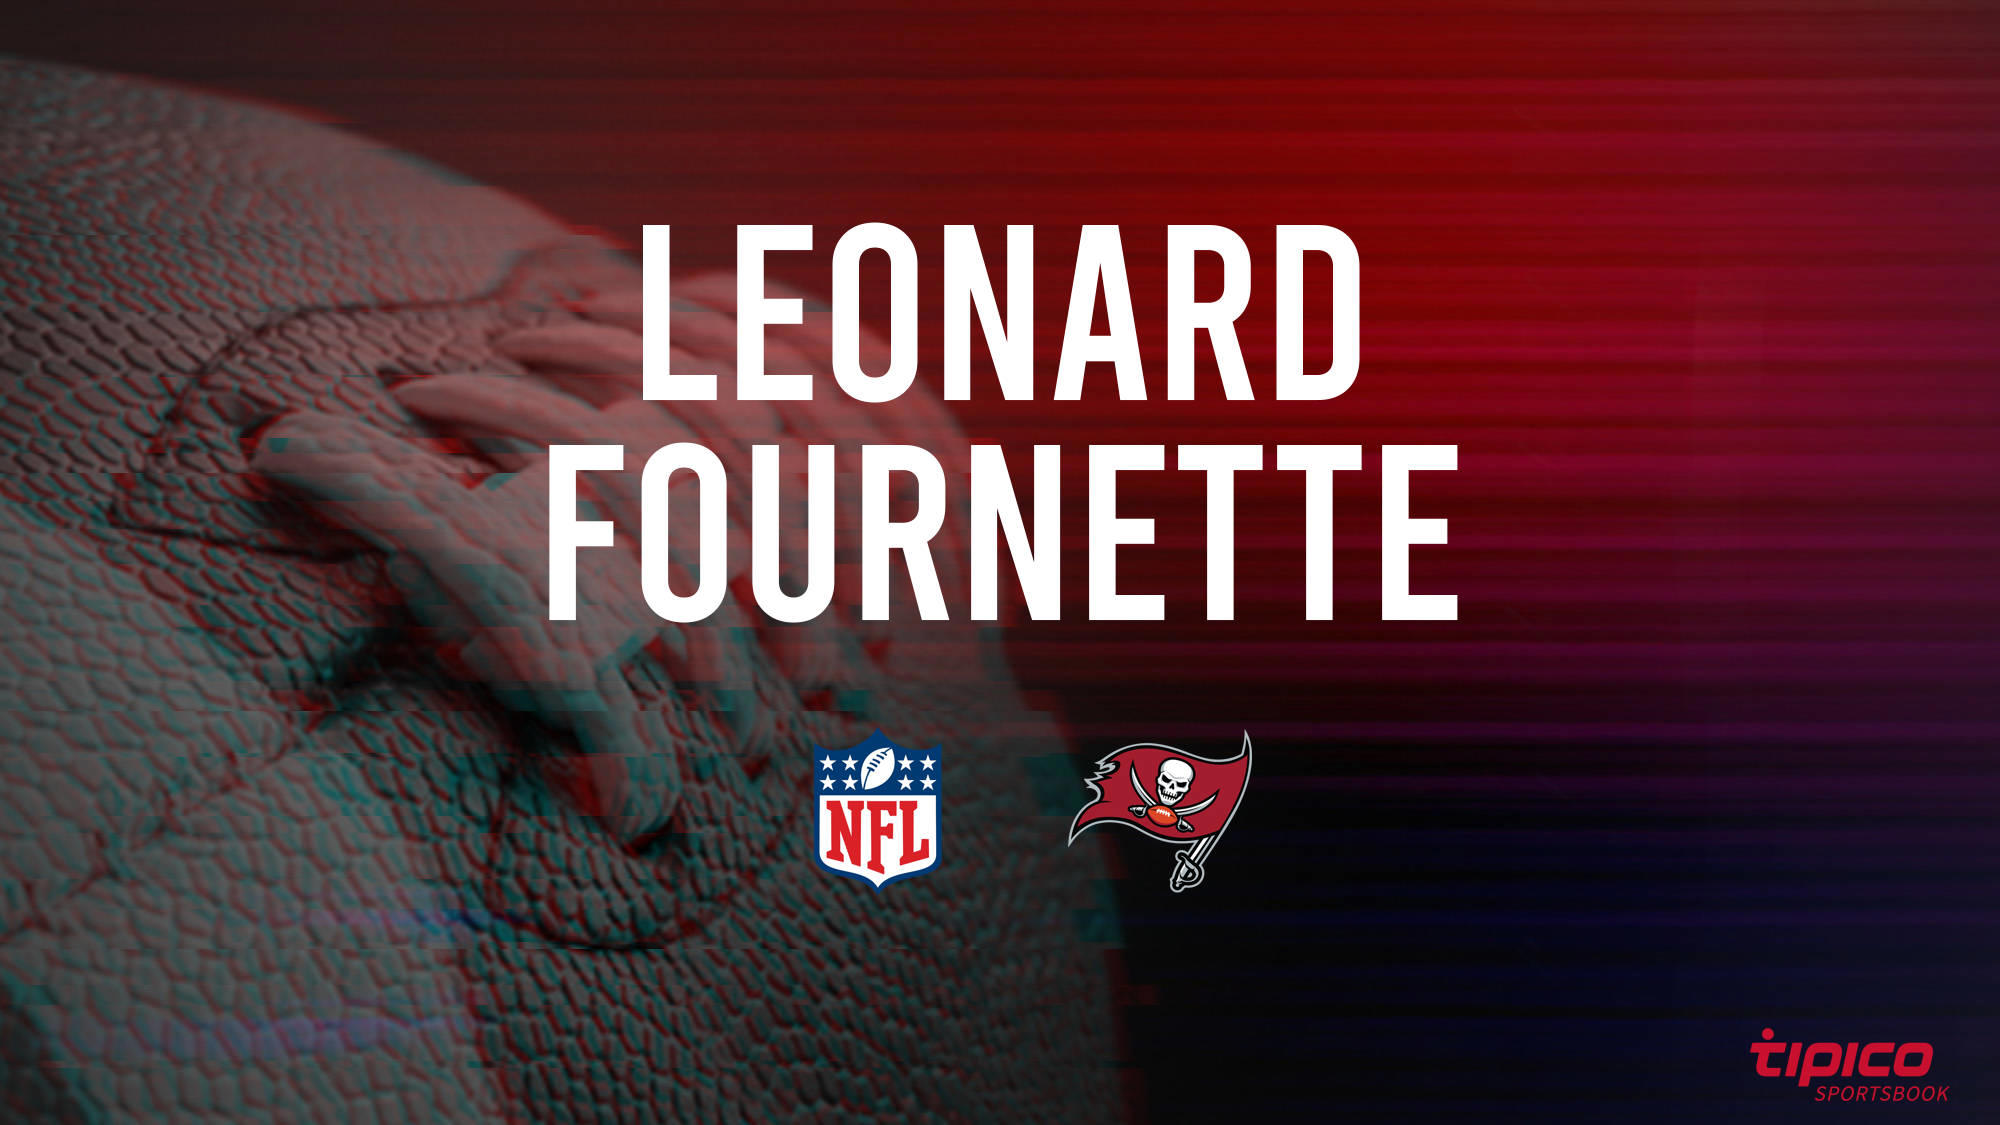 Leonard Fournette vs. Dallas Cowboys